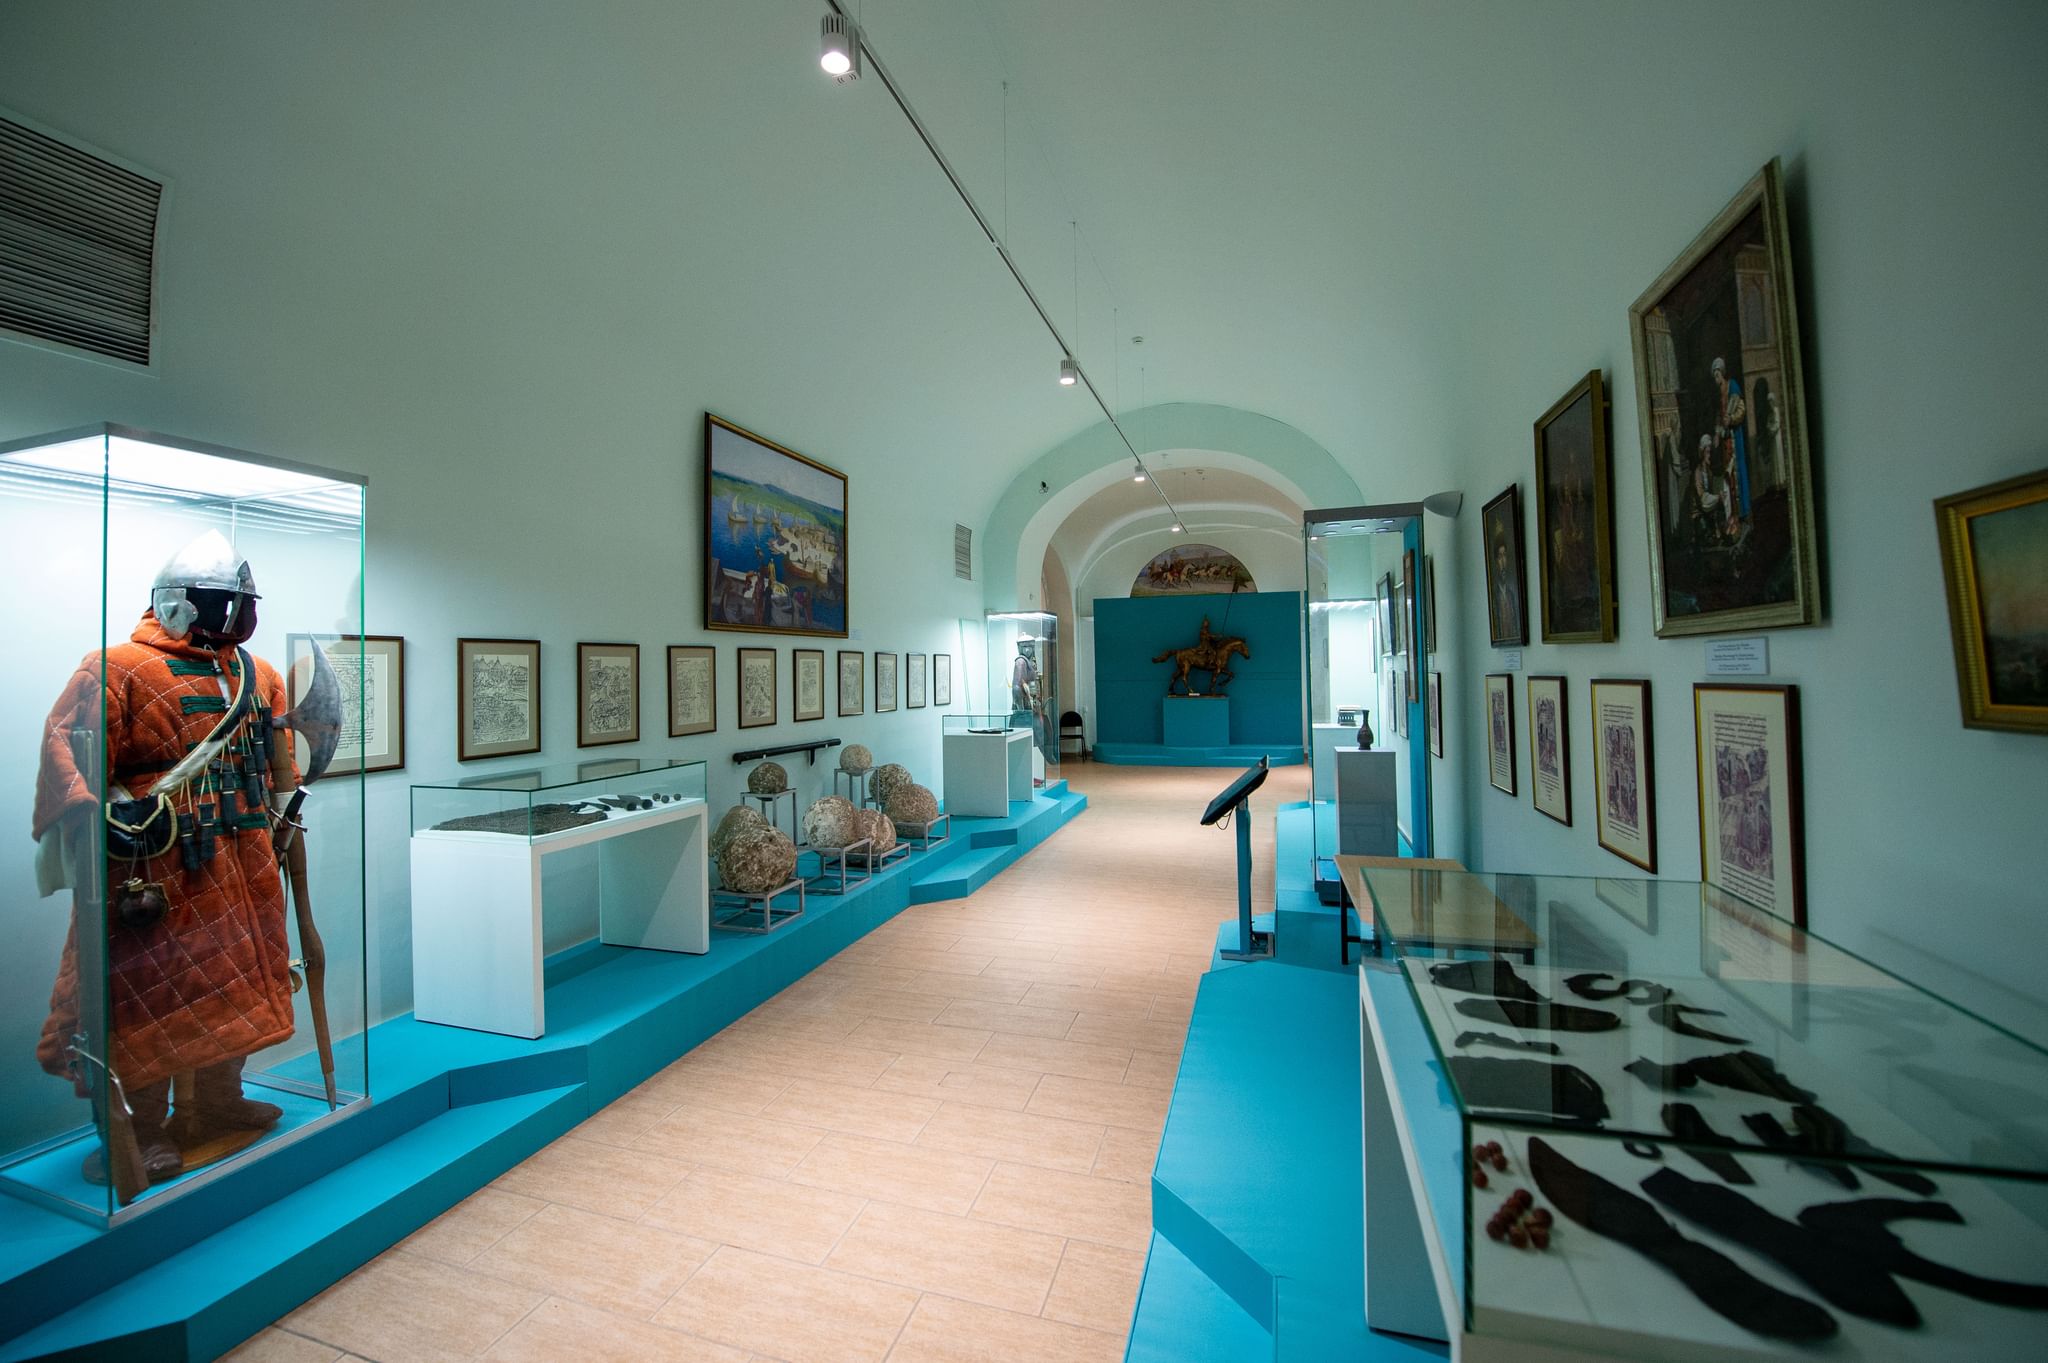 Музеи татарстана фото